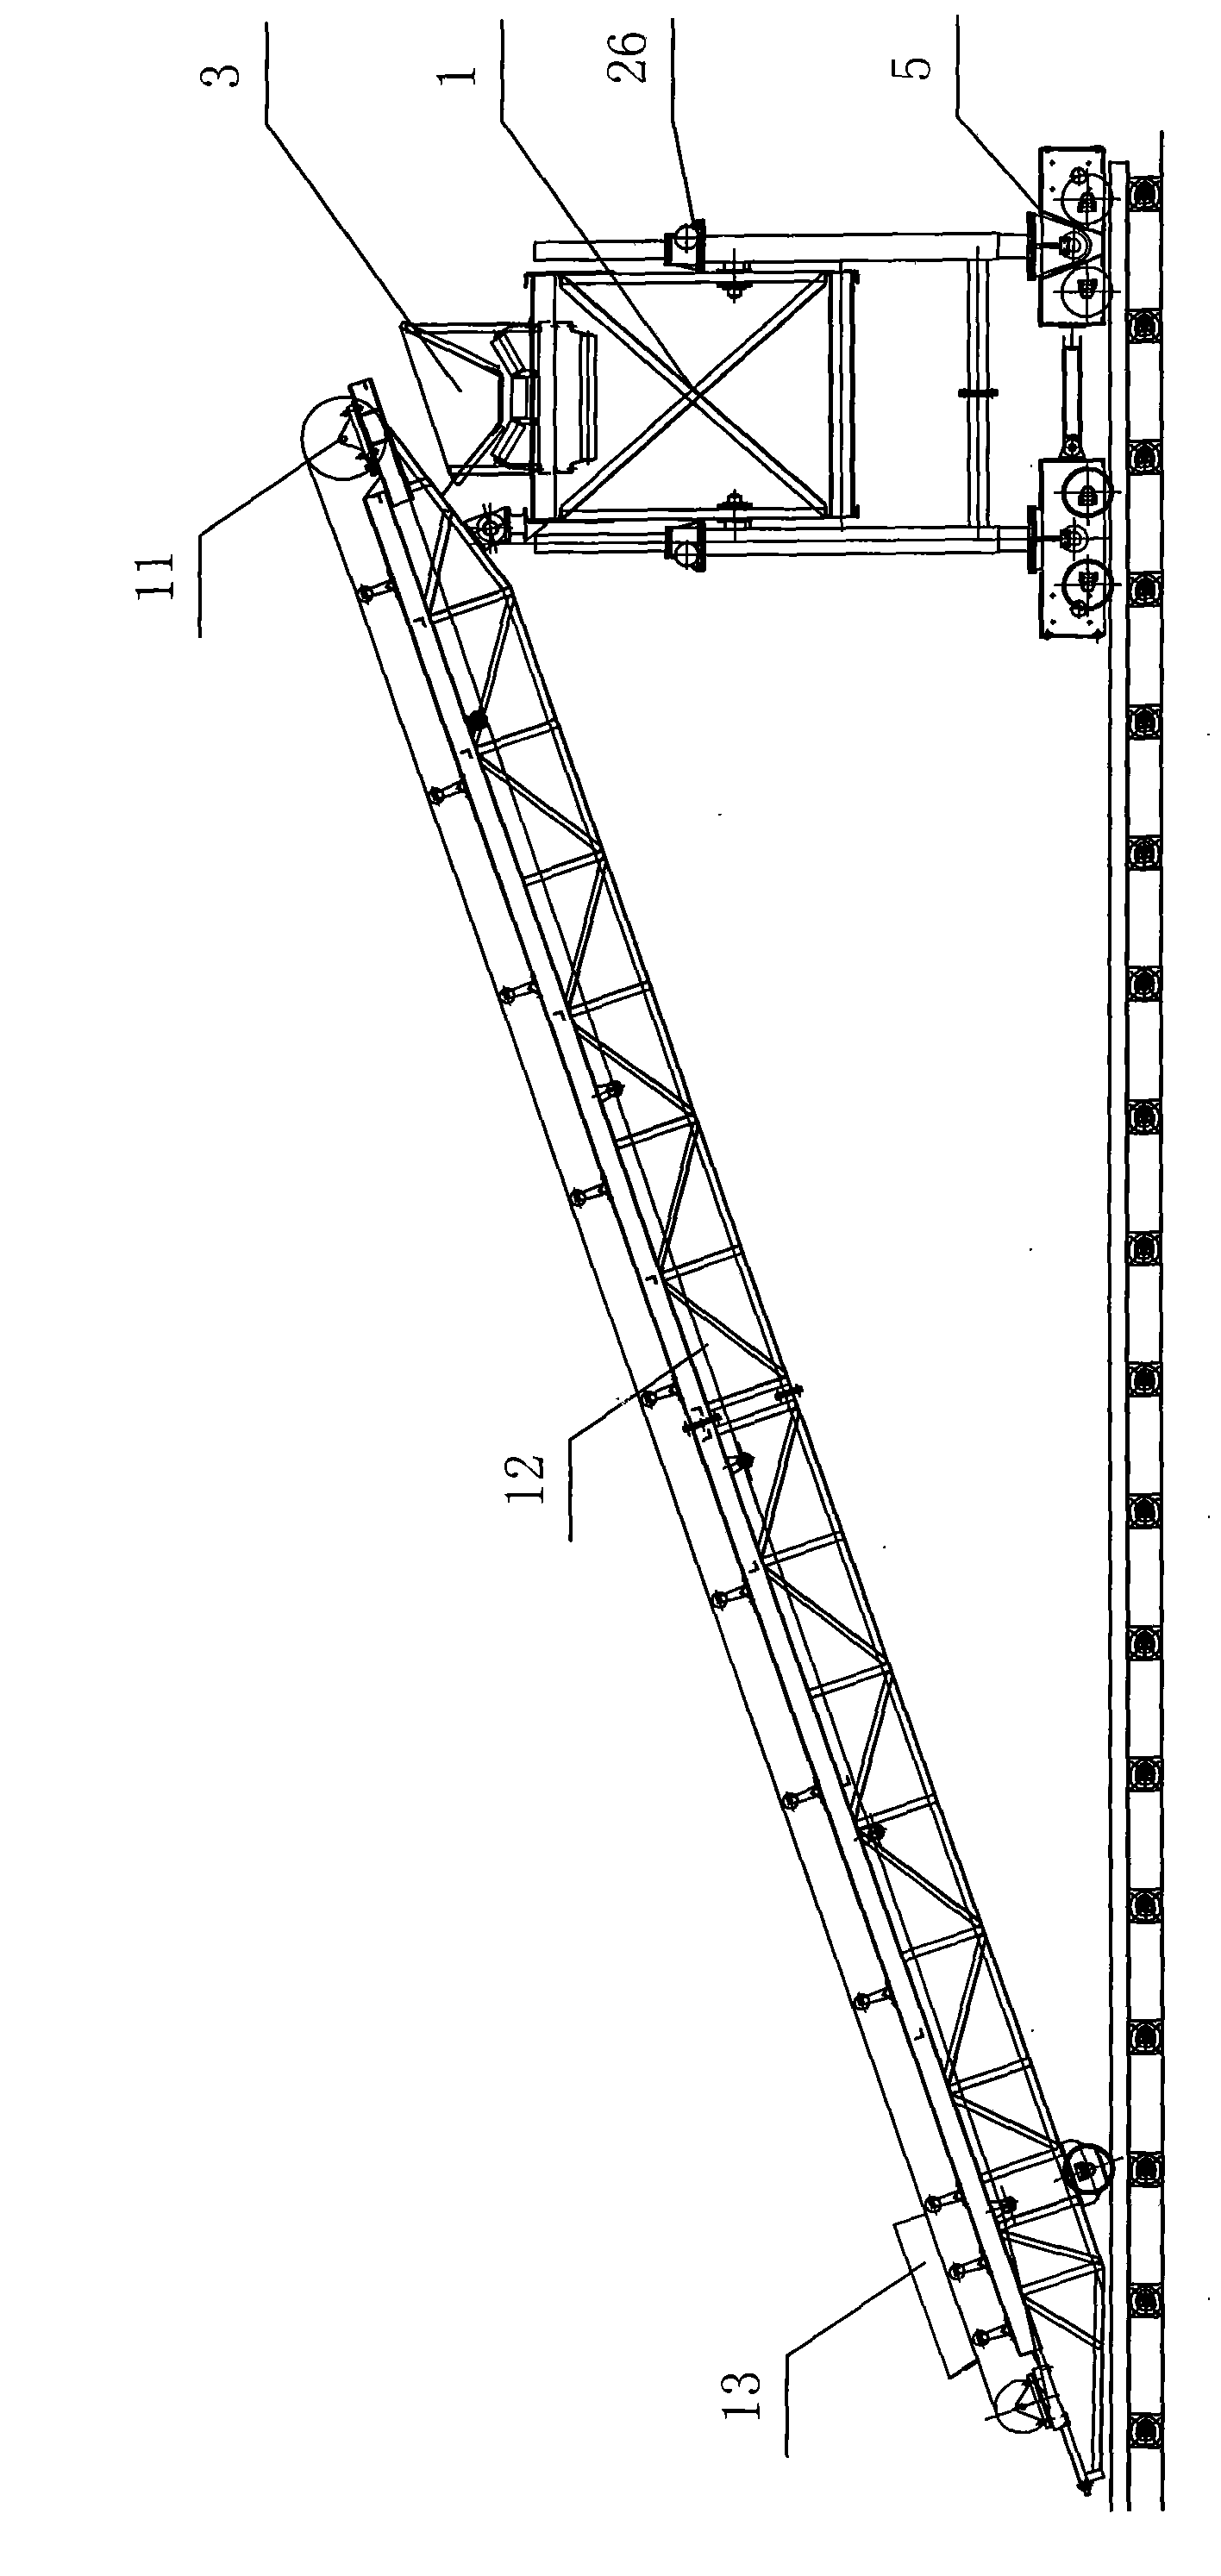 Large-span concrete slope masonry machine